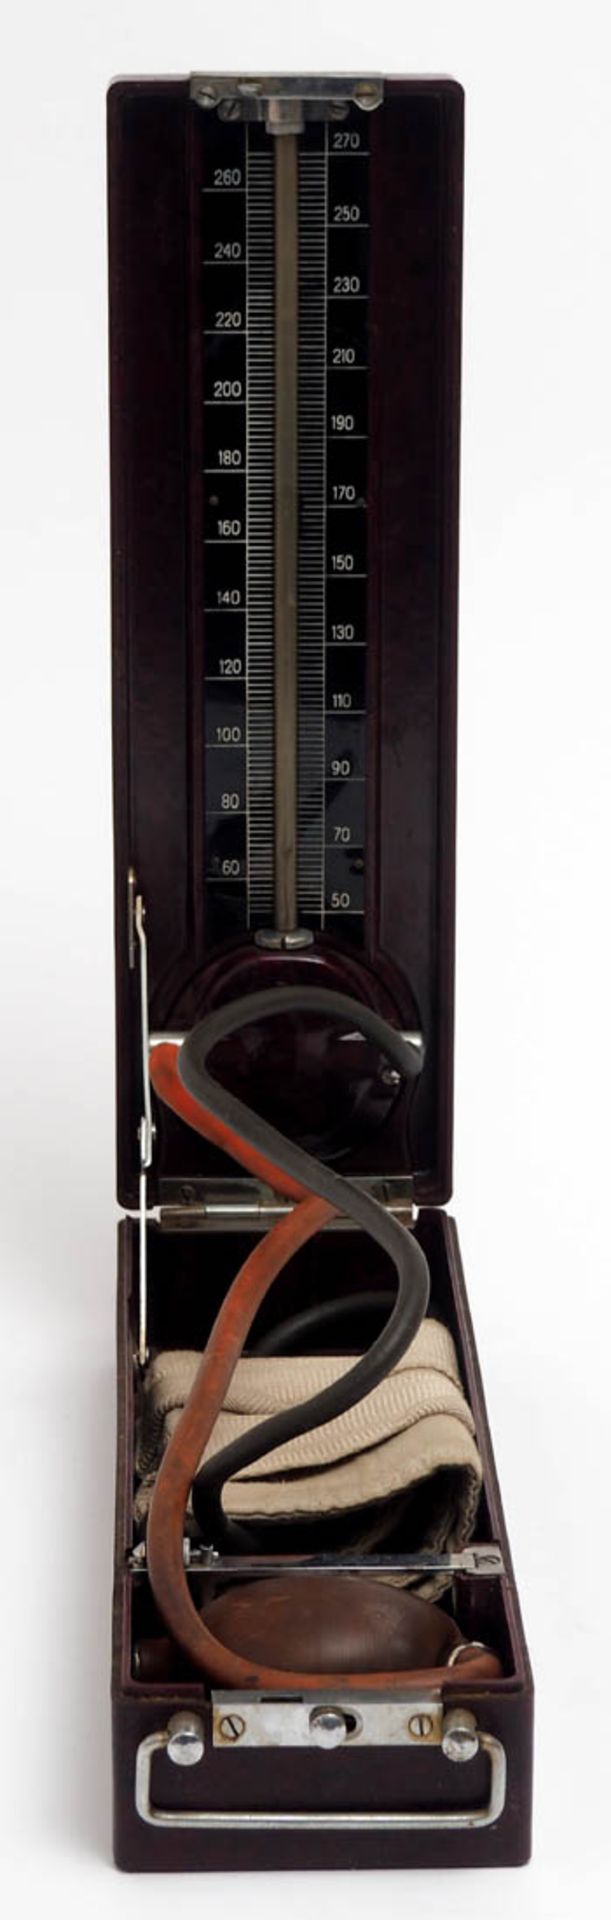 Blutdruckmessgerät, 30er Jahre Brauner Bakelitkasten mit Tragegriff. Im Inneren eingebautes